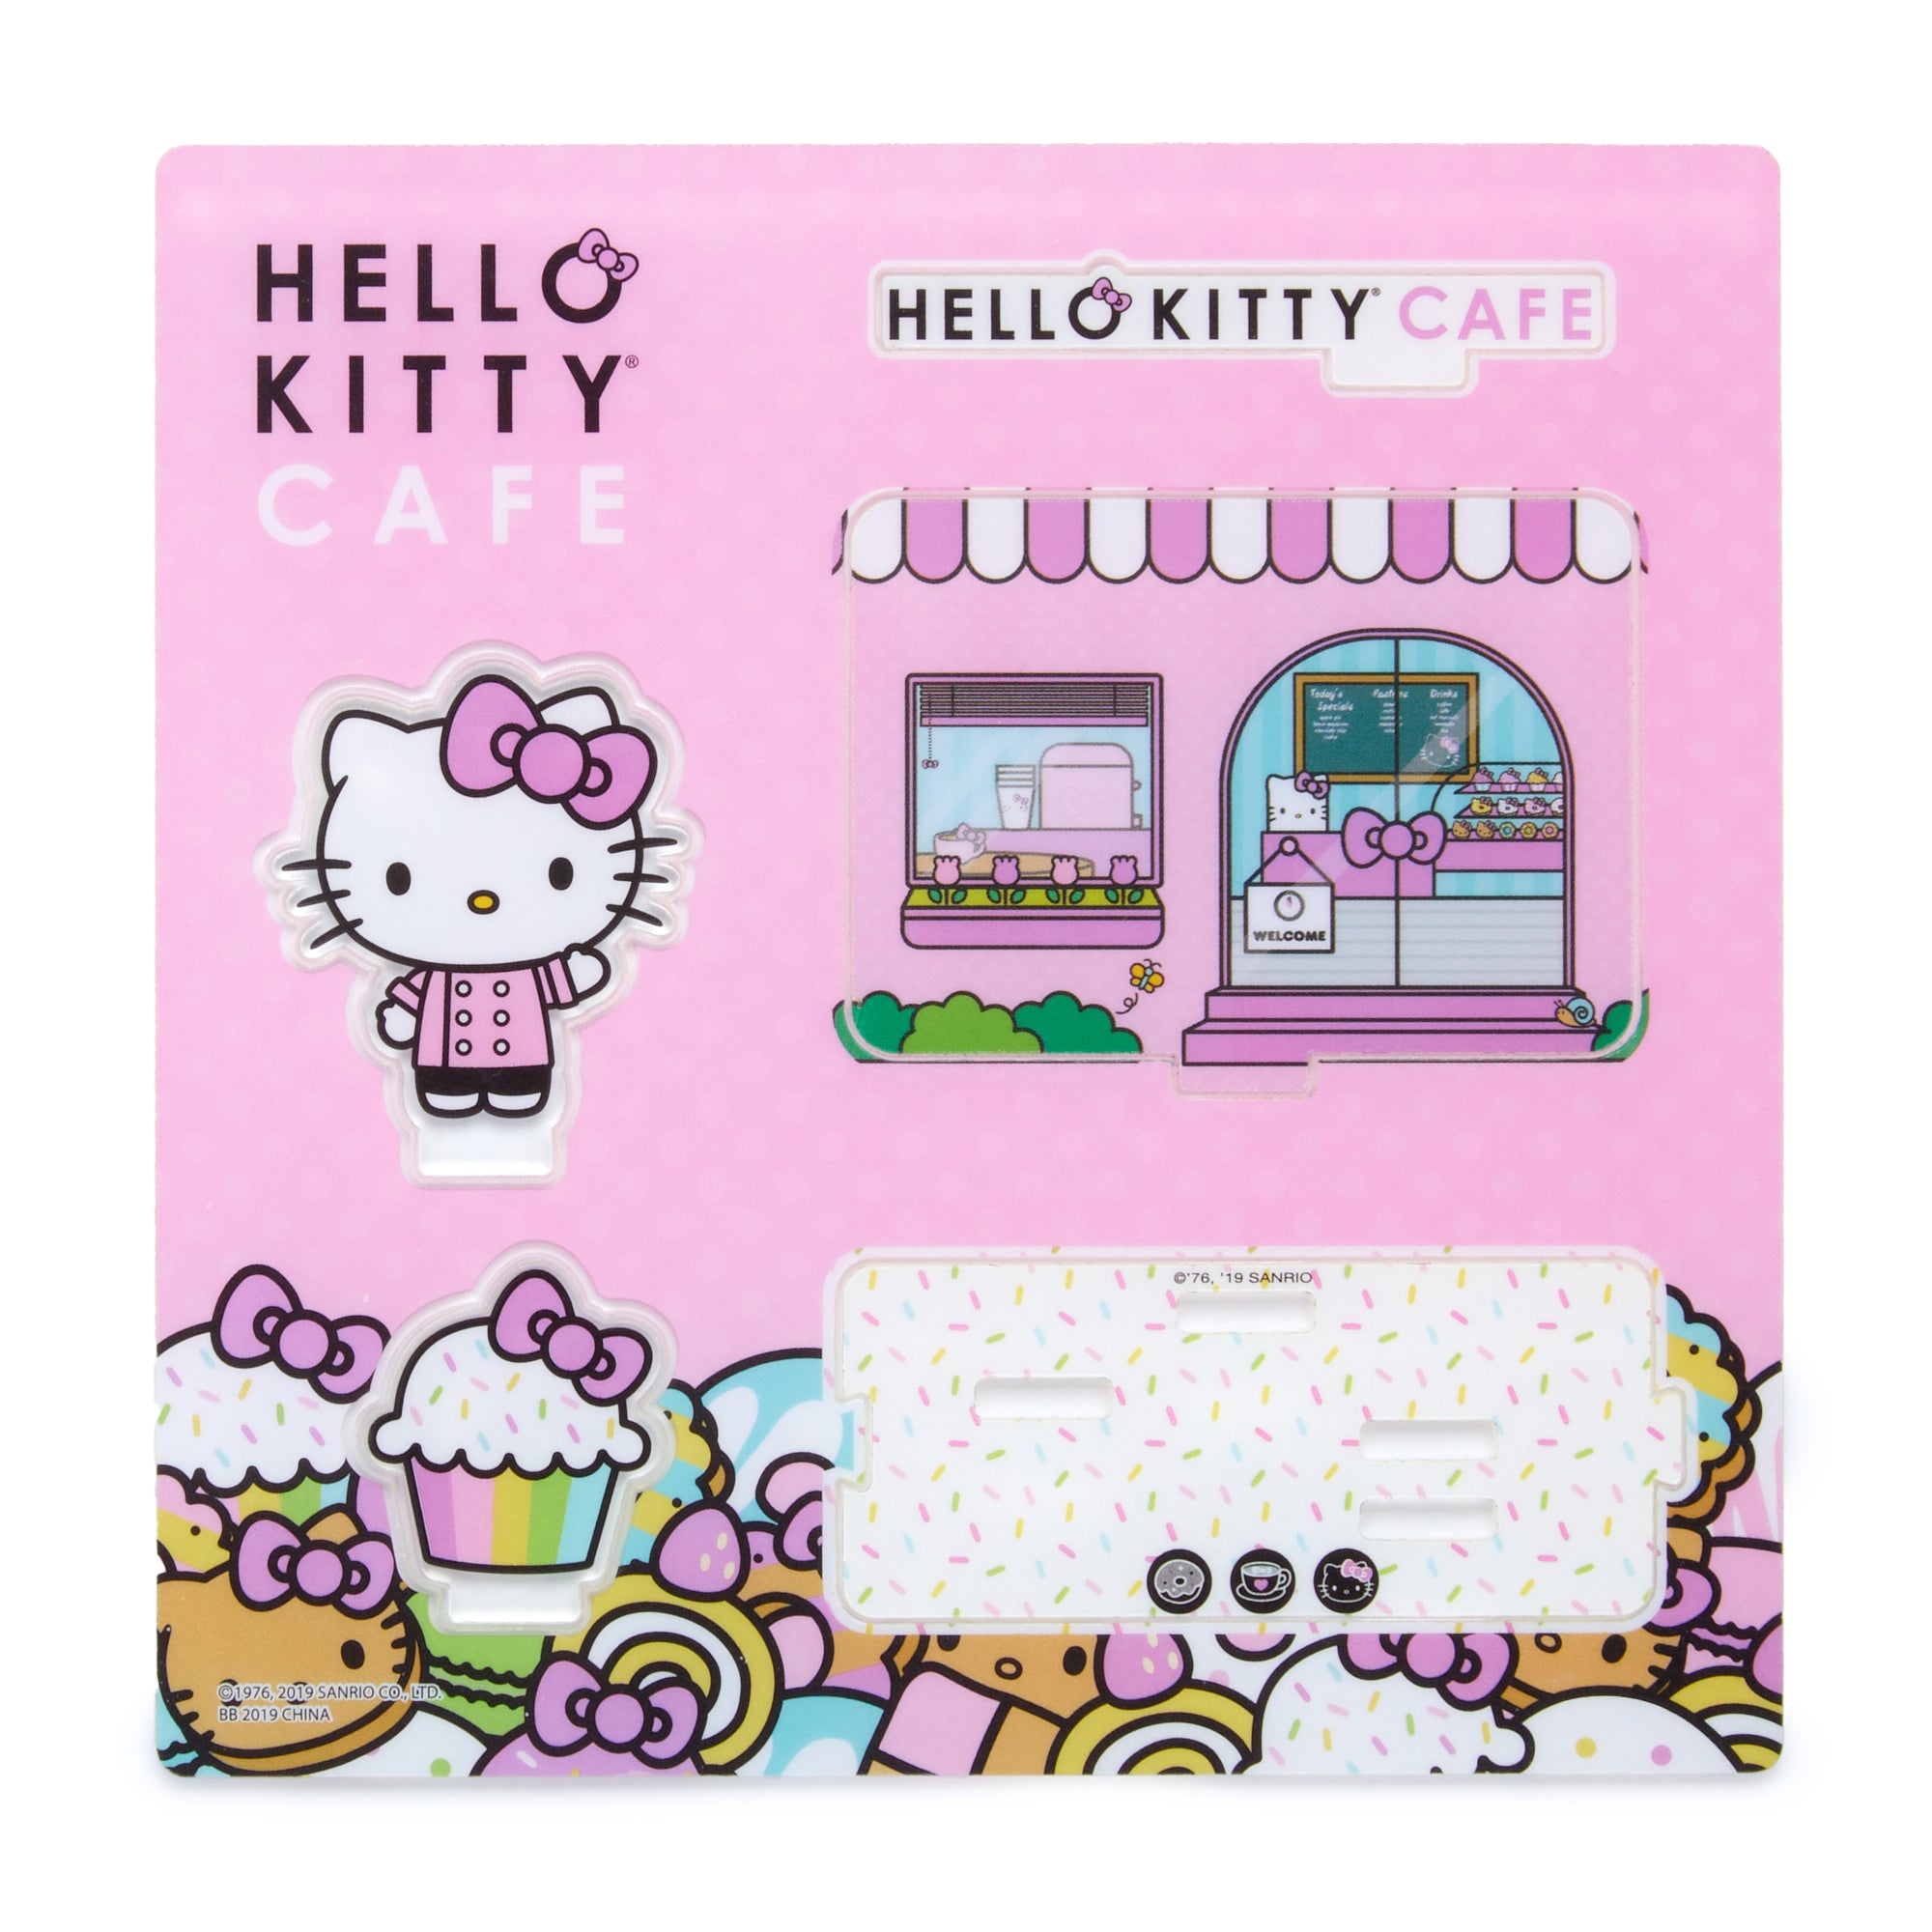 Hello Kitty Cafe Mini 3D Scene Toys&Games BB TOYS   